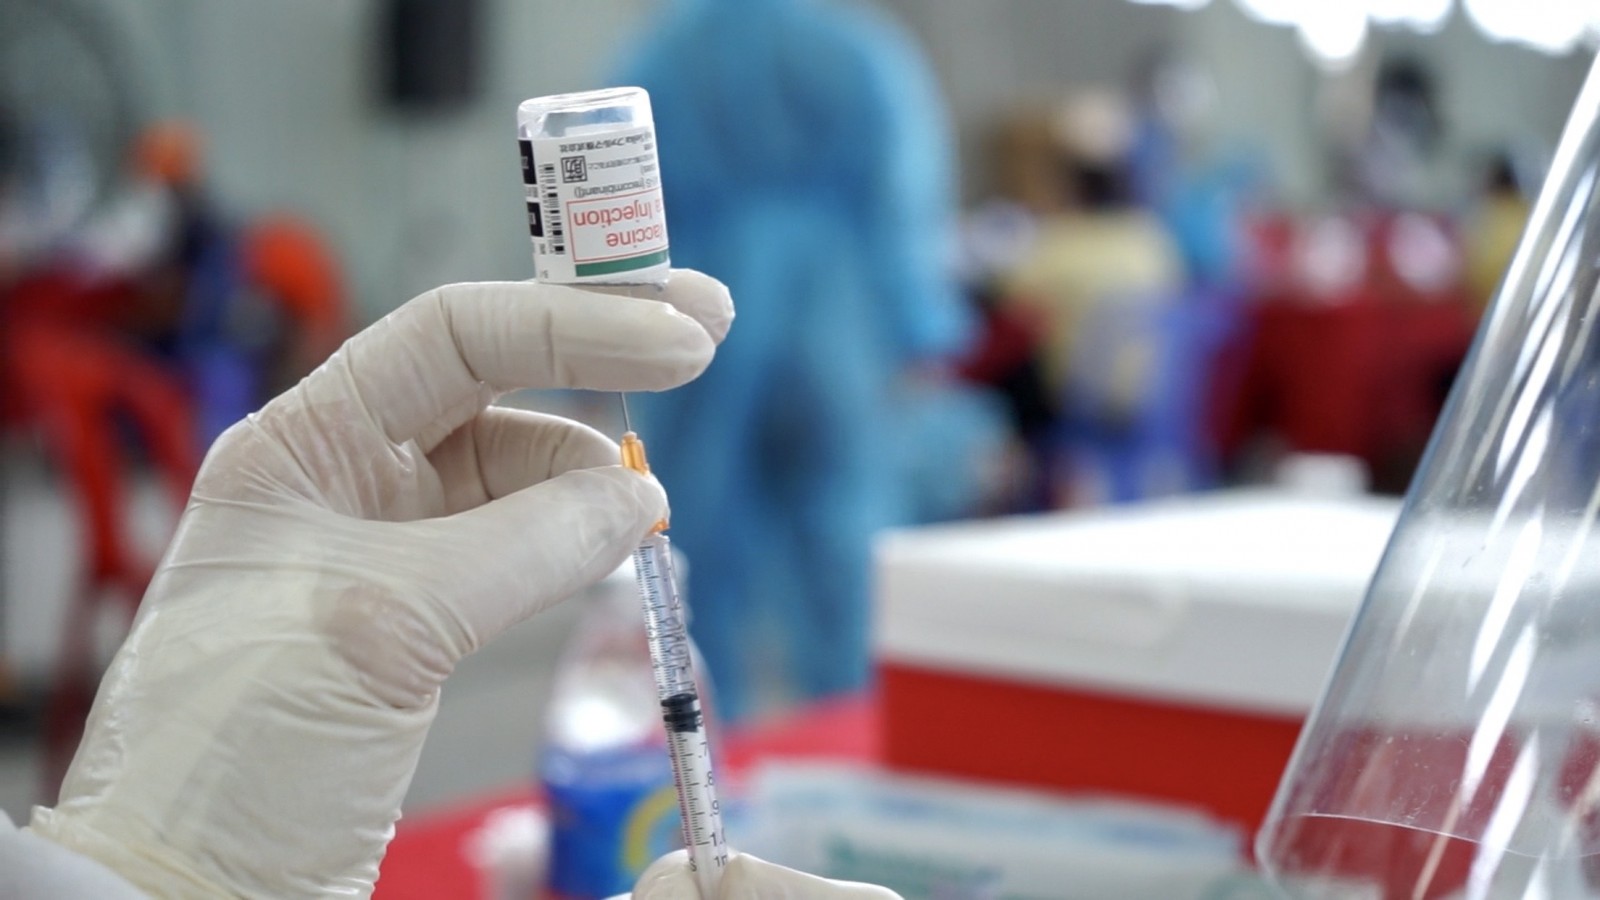 Binh Dương kiến nghị phân bổ thêm 1 triệu liều vaccine COVID-19, cam kết tiêm trong 10 ngày